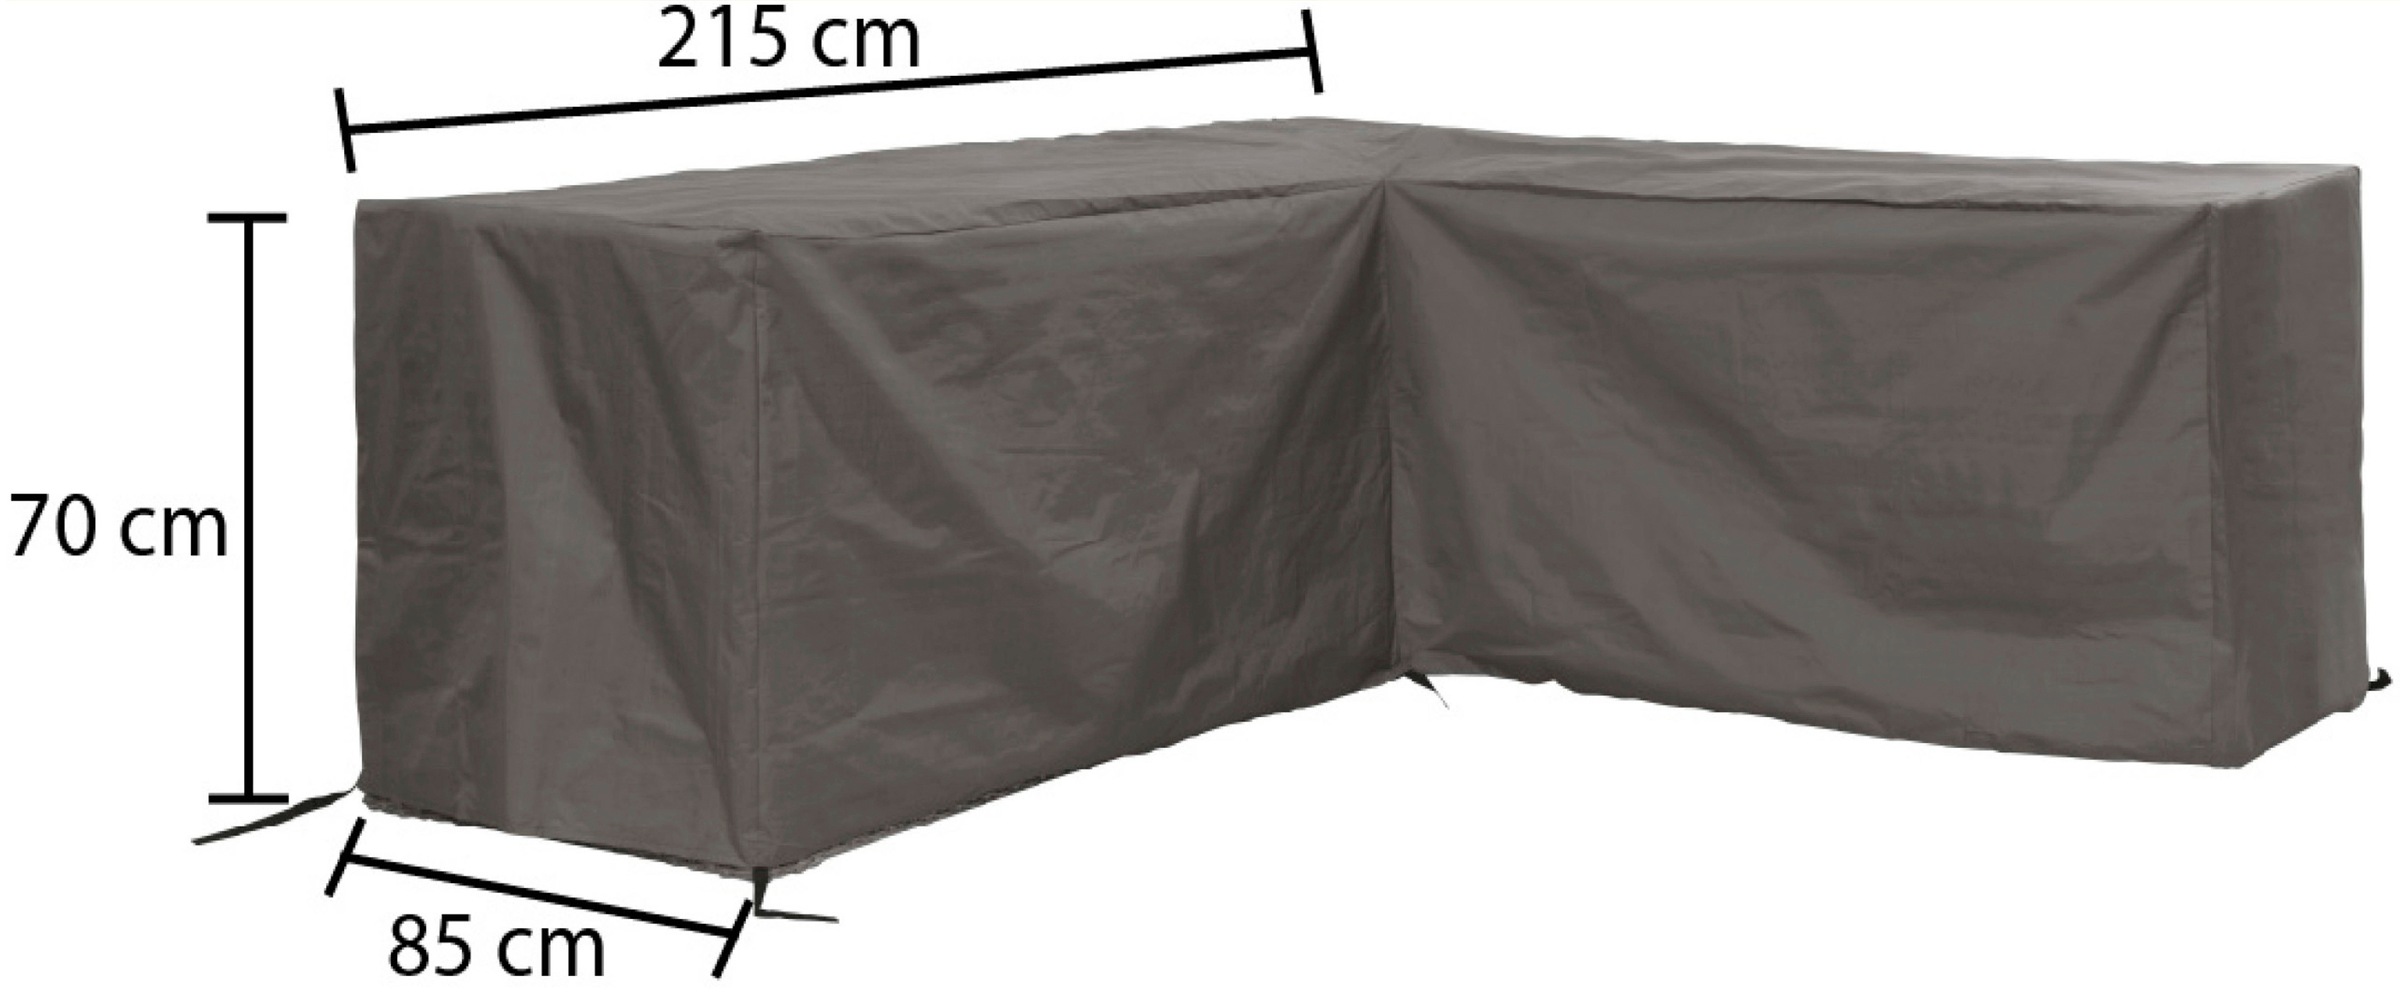 winza outdoor covers Gartenmöbel-Schutzhülle, geeignet für Loungeset in L Form, bis 215 cm